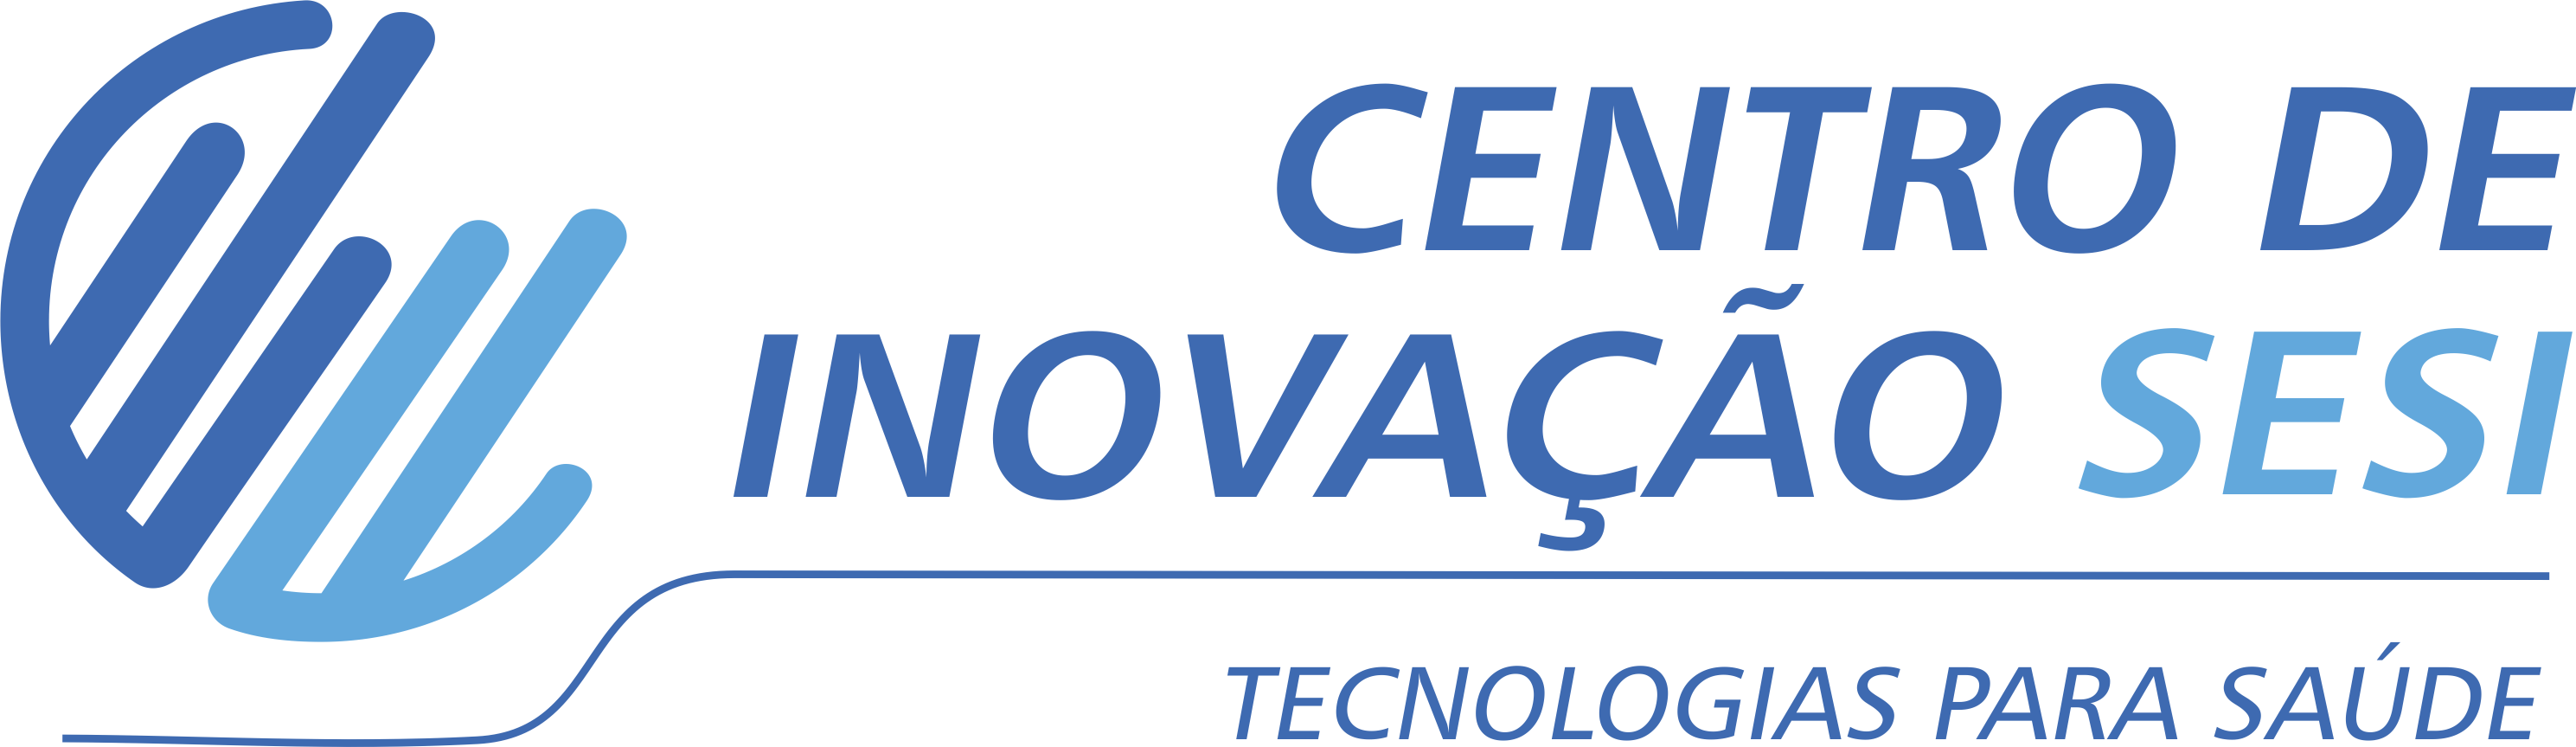 Centro de Inovação SESI - Tecnologias para Saúde